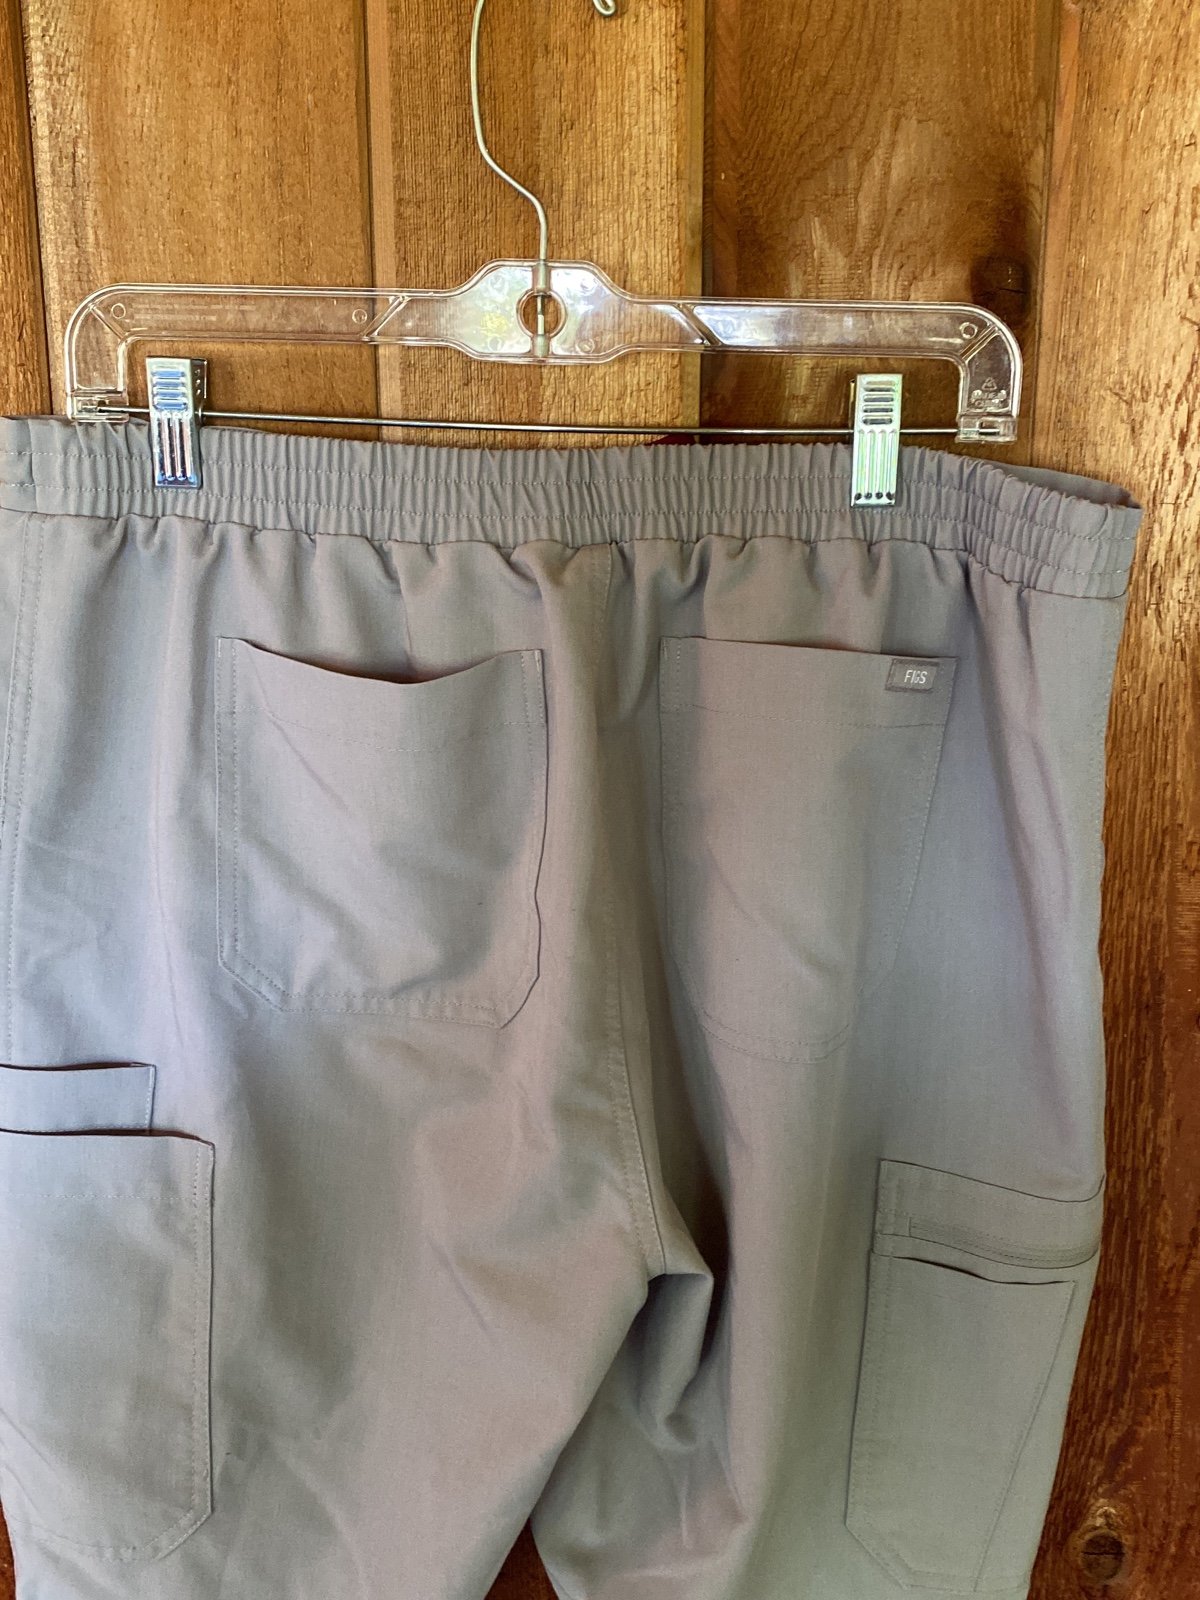 Figs scrub pants, size L/T aH7zTvrbs